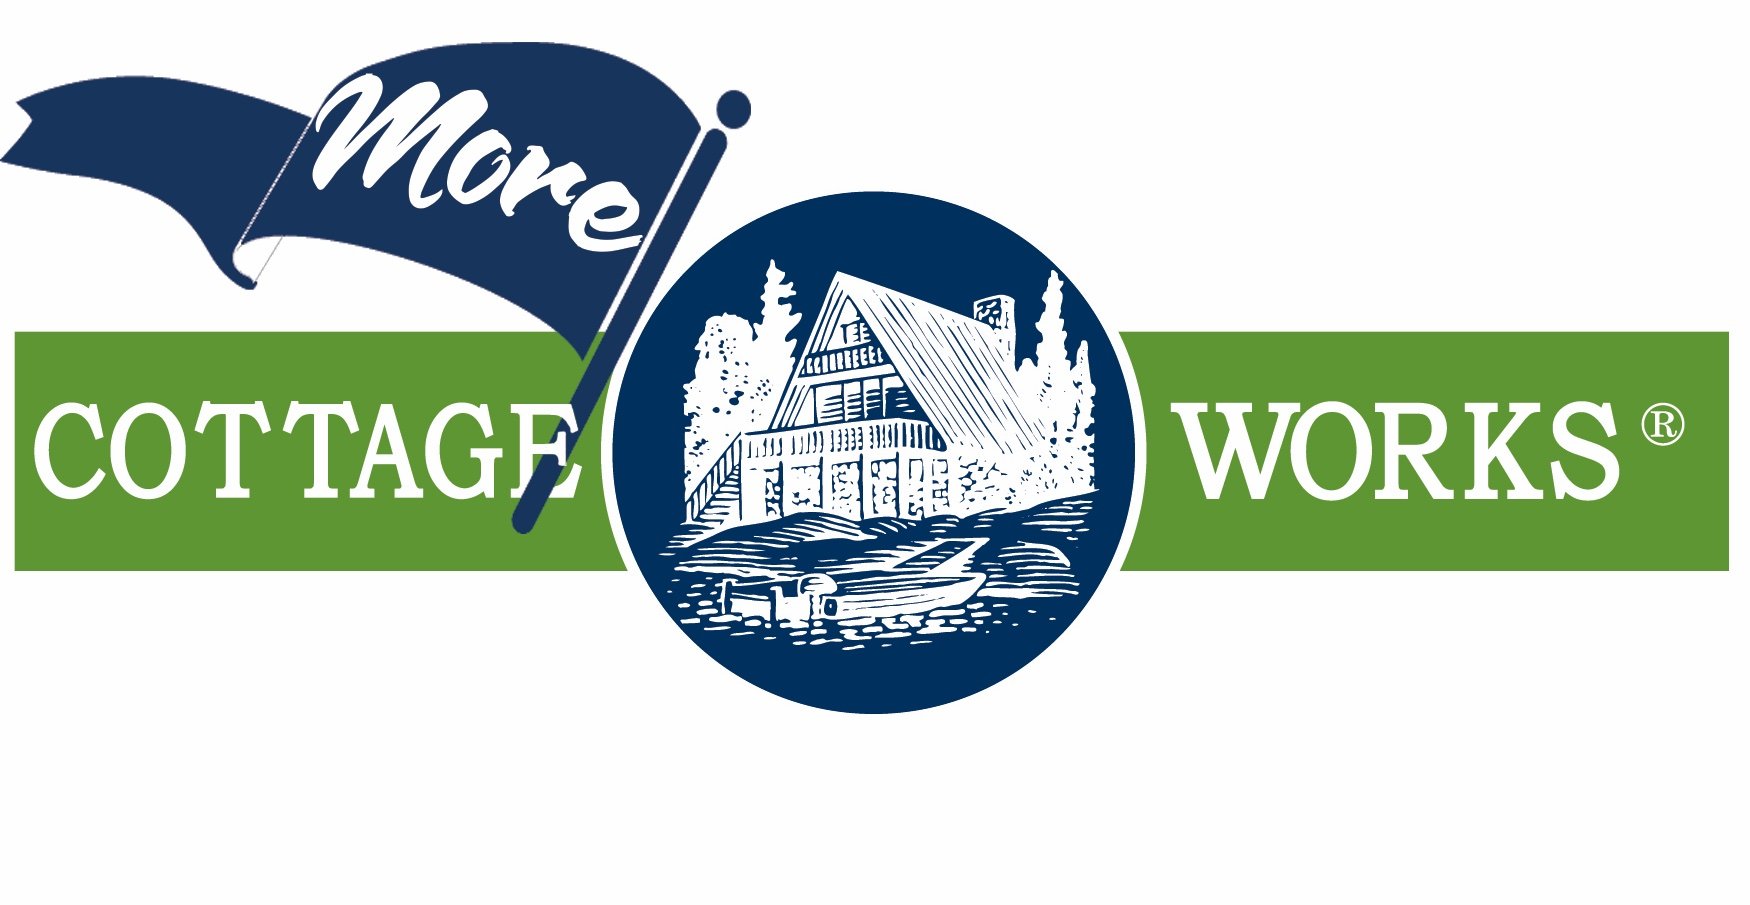 More Cottage Works Logo.jpg